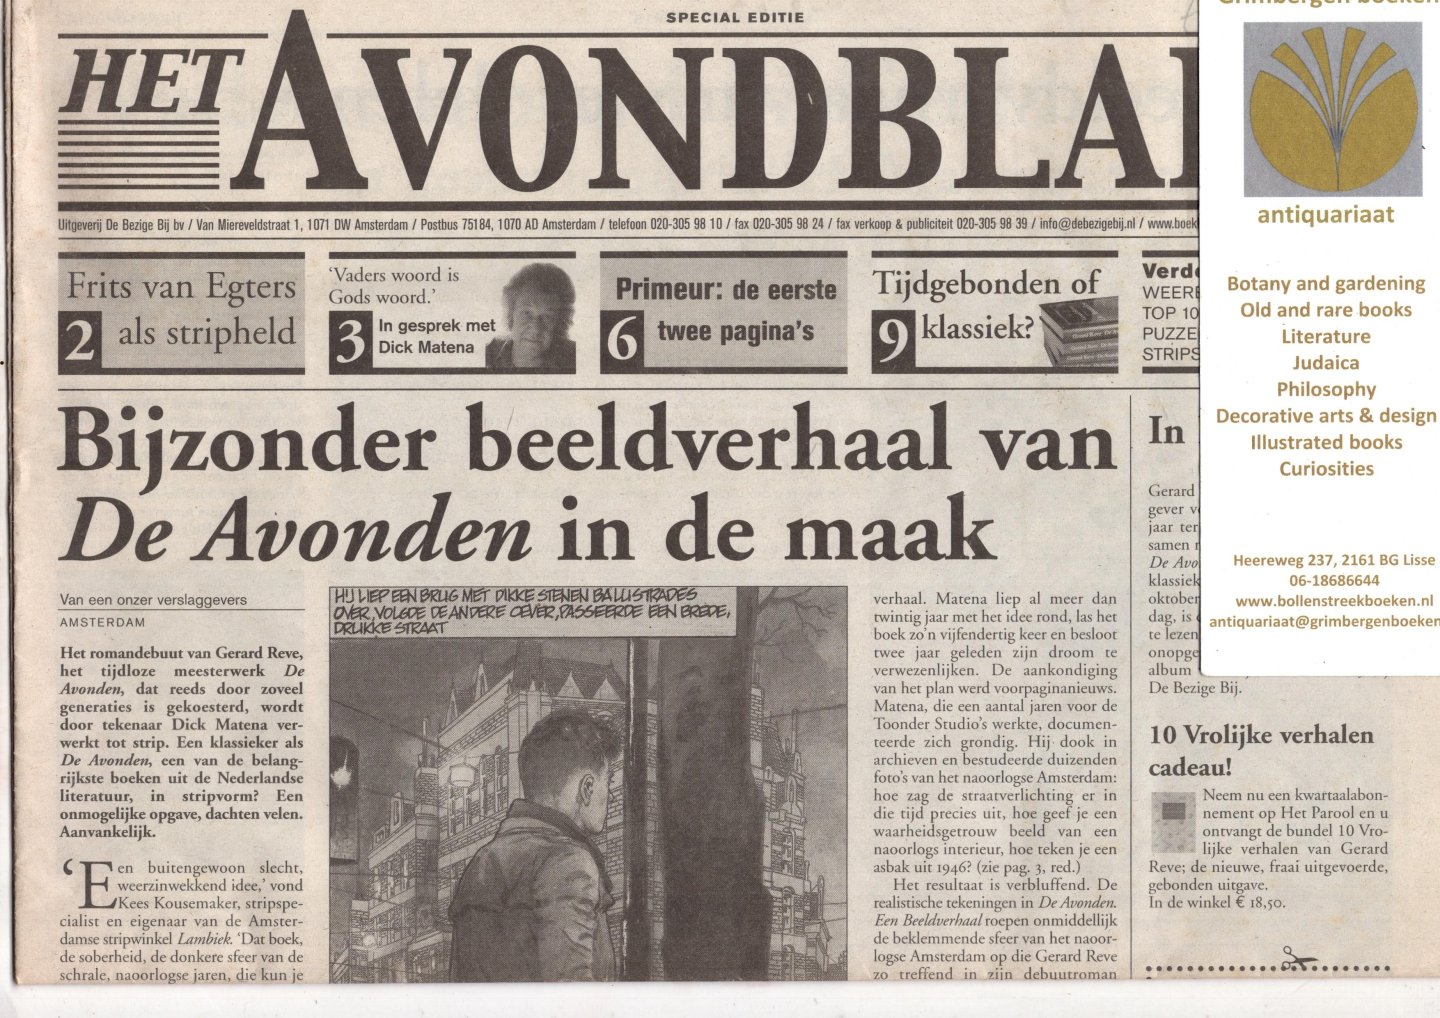 Reve, Gerard - Het Avondblad - november  2002.  Uitgegeven t.g.v. het verschijnen van De Avonden in stropvorm van Dick Matena